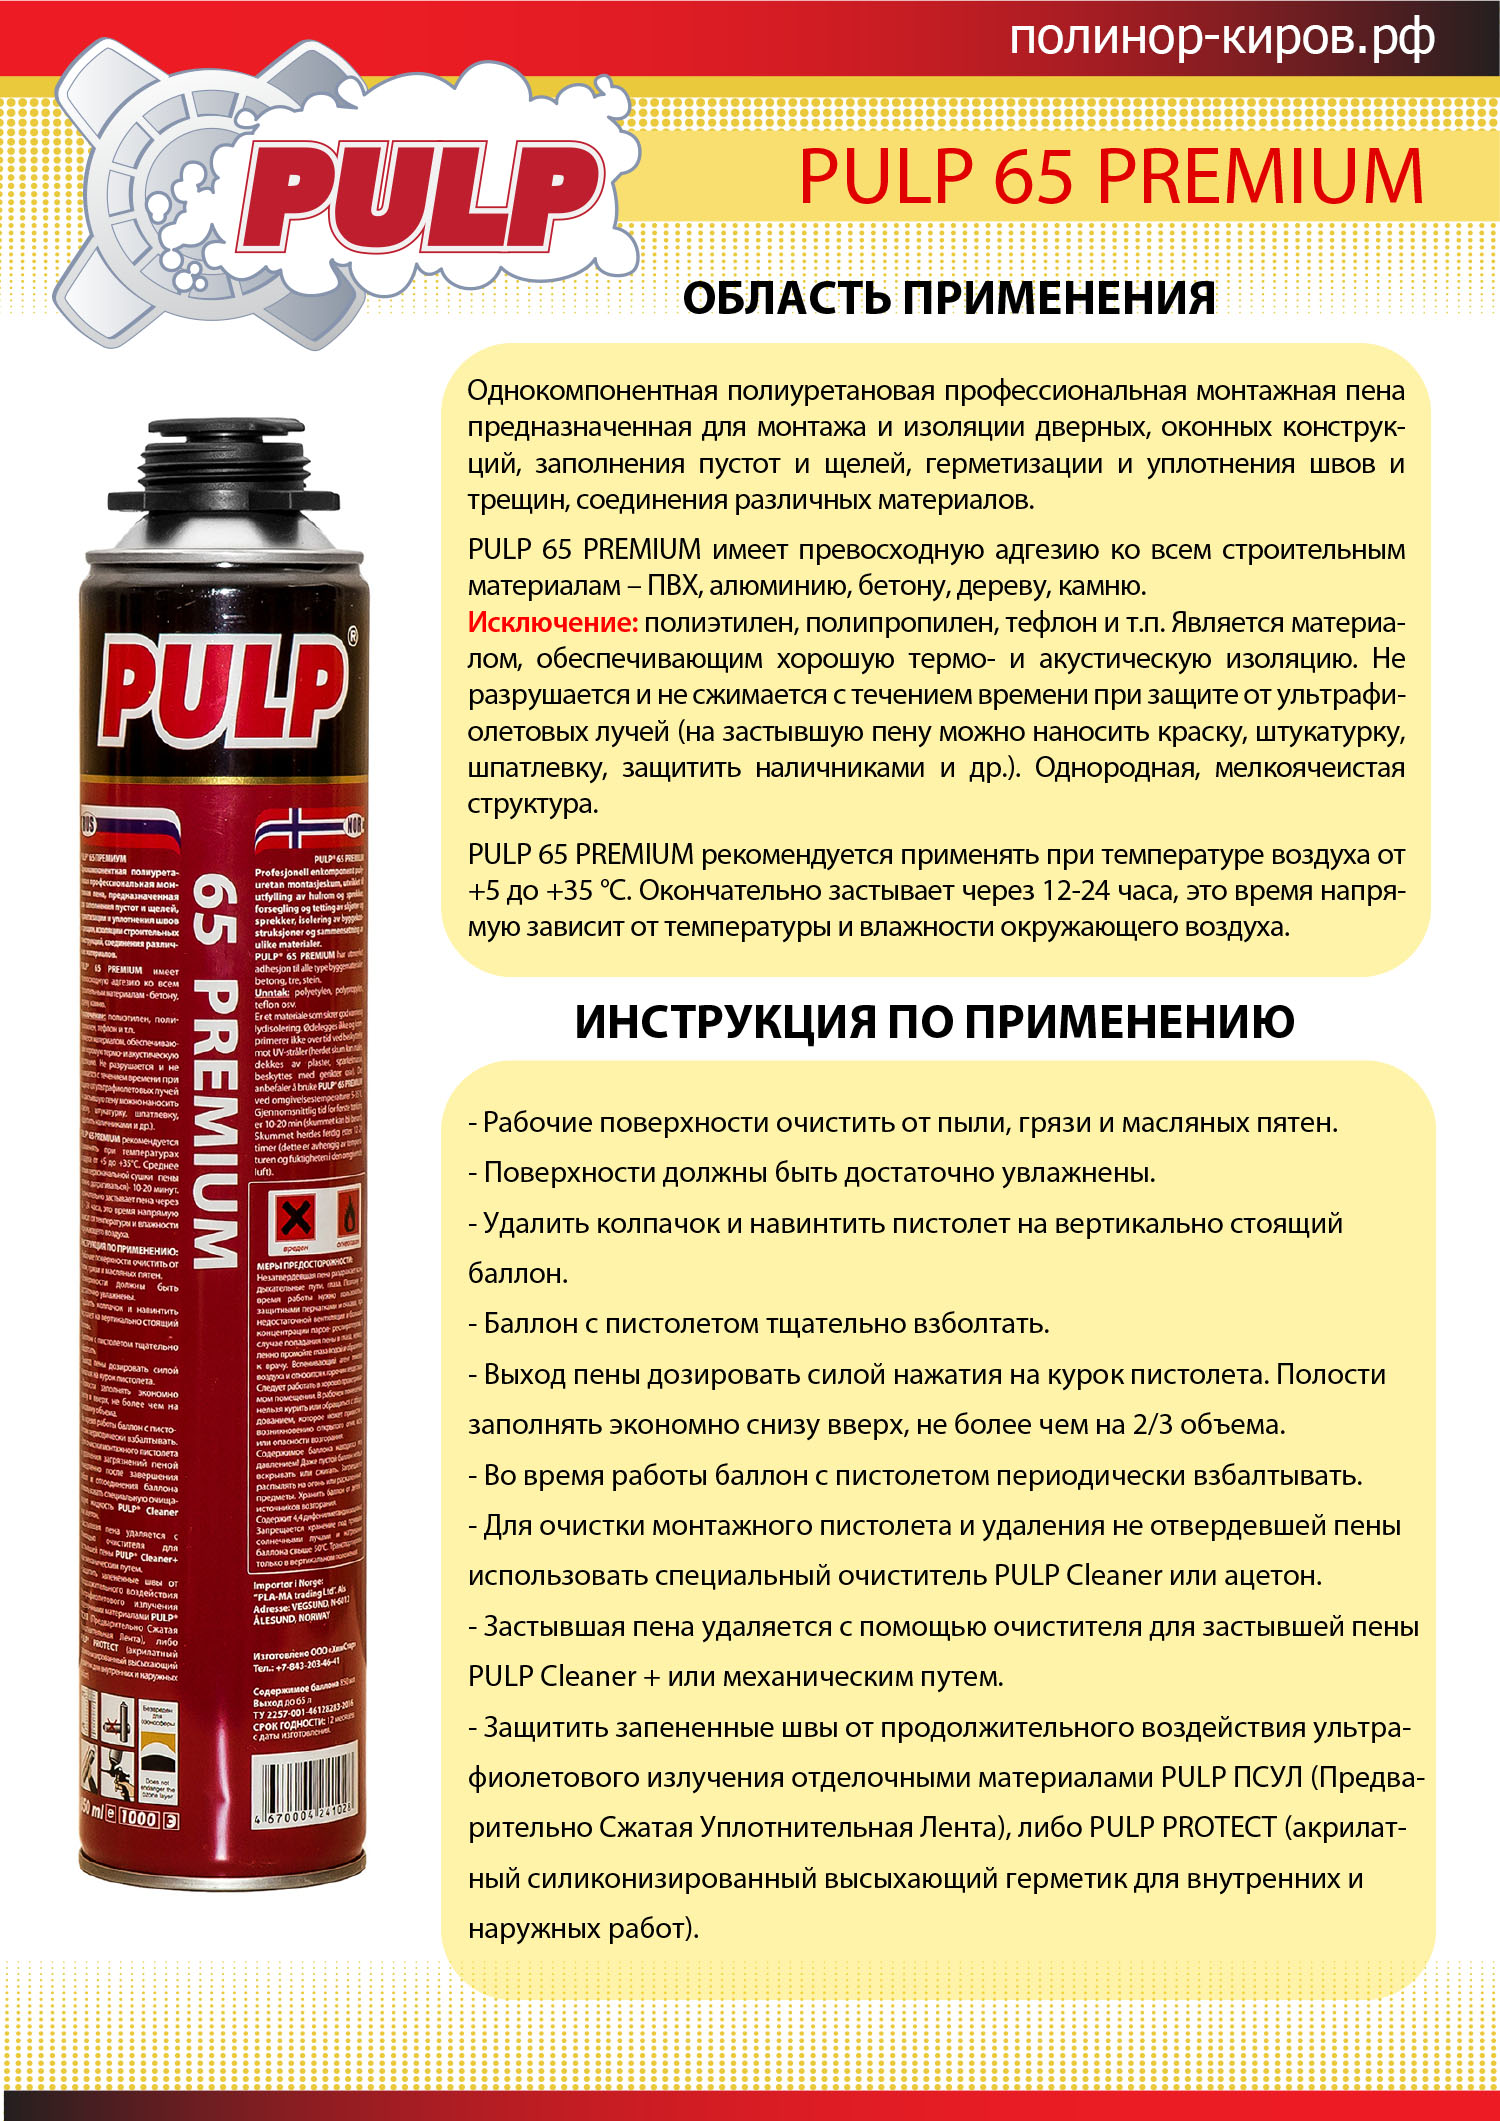 Высококачественная монтажная пена Pulp 65 Premium